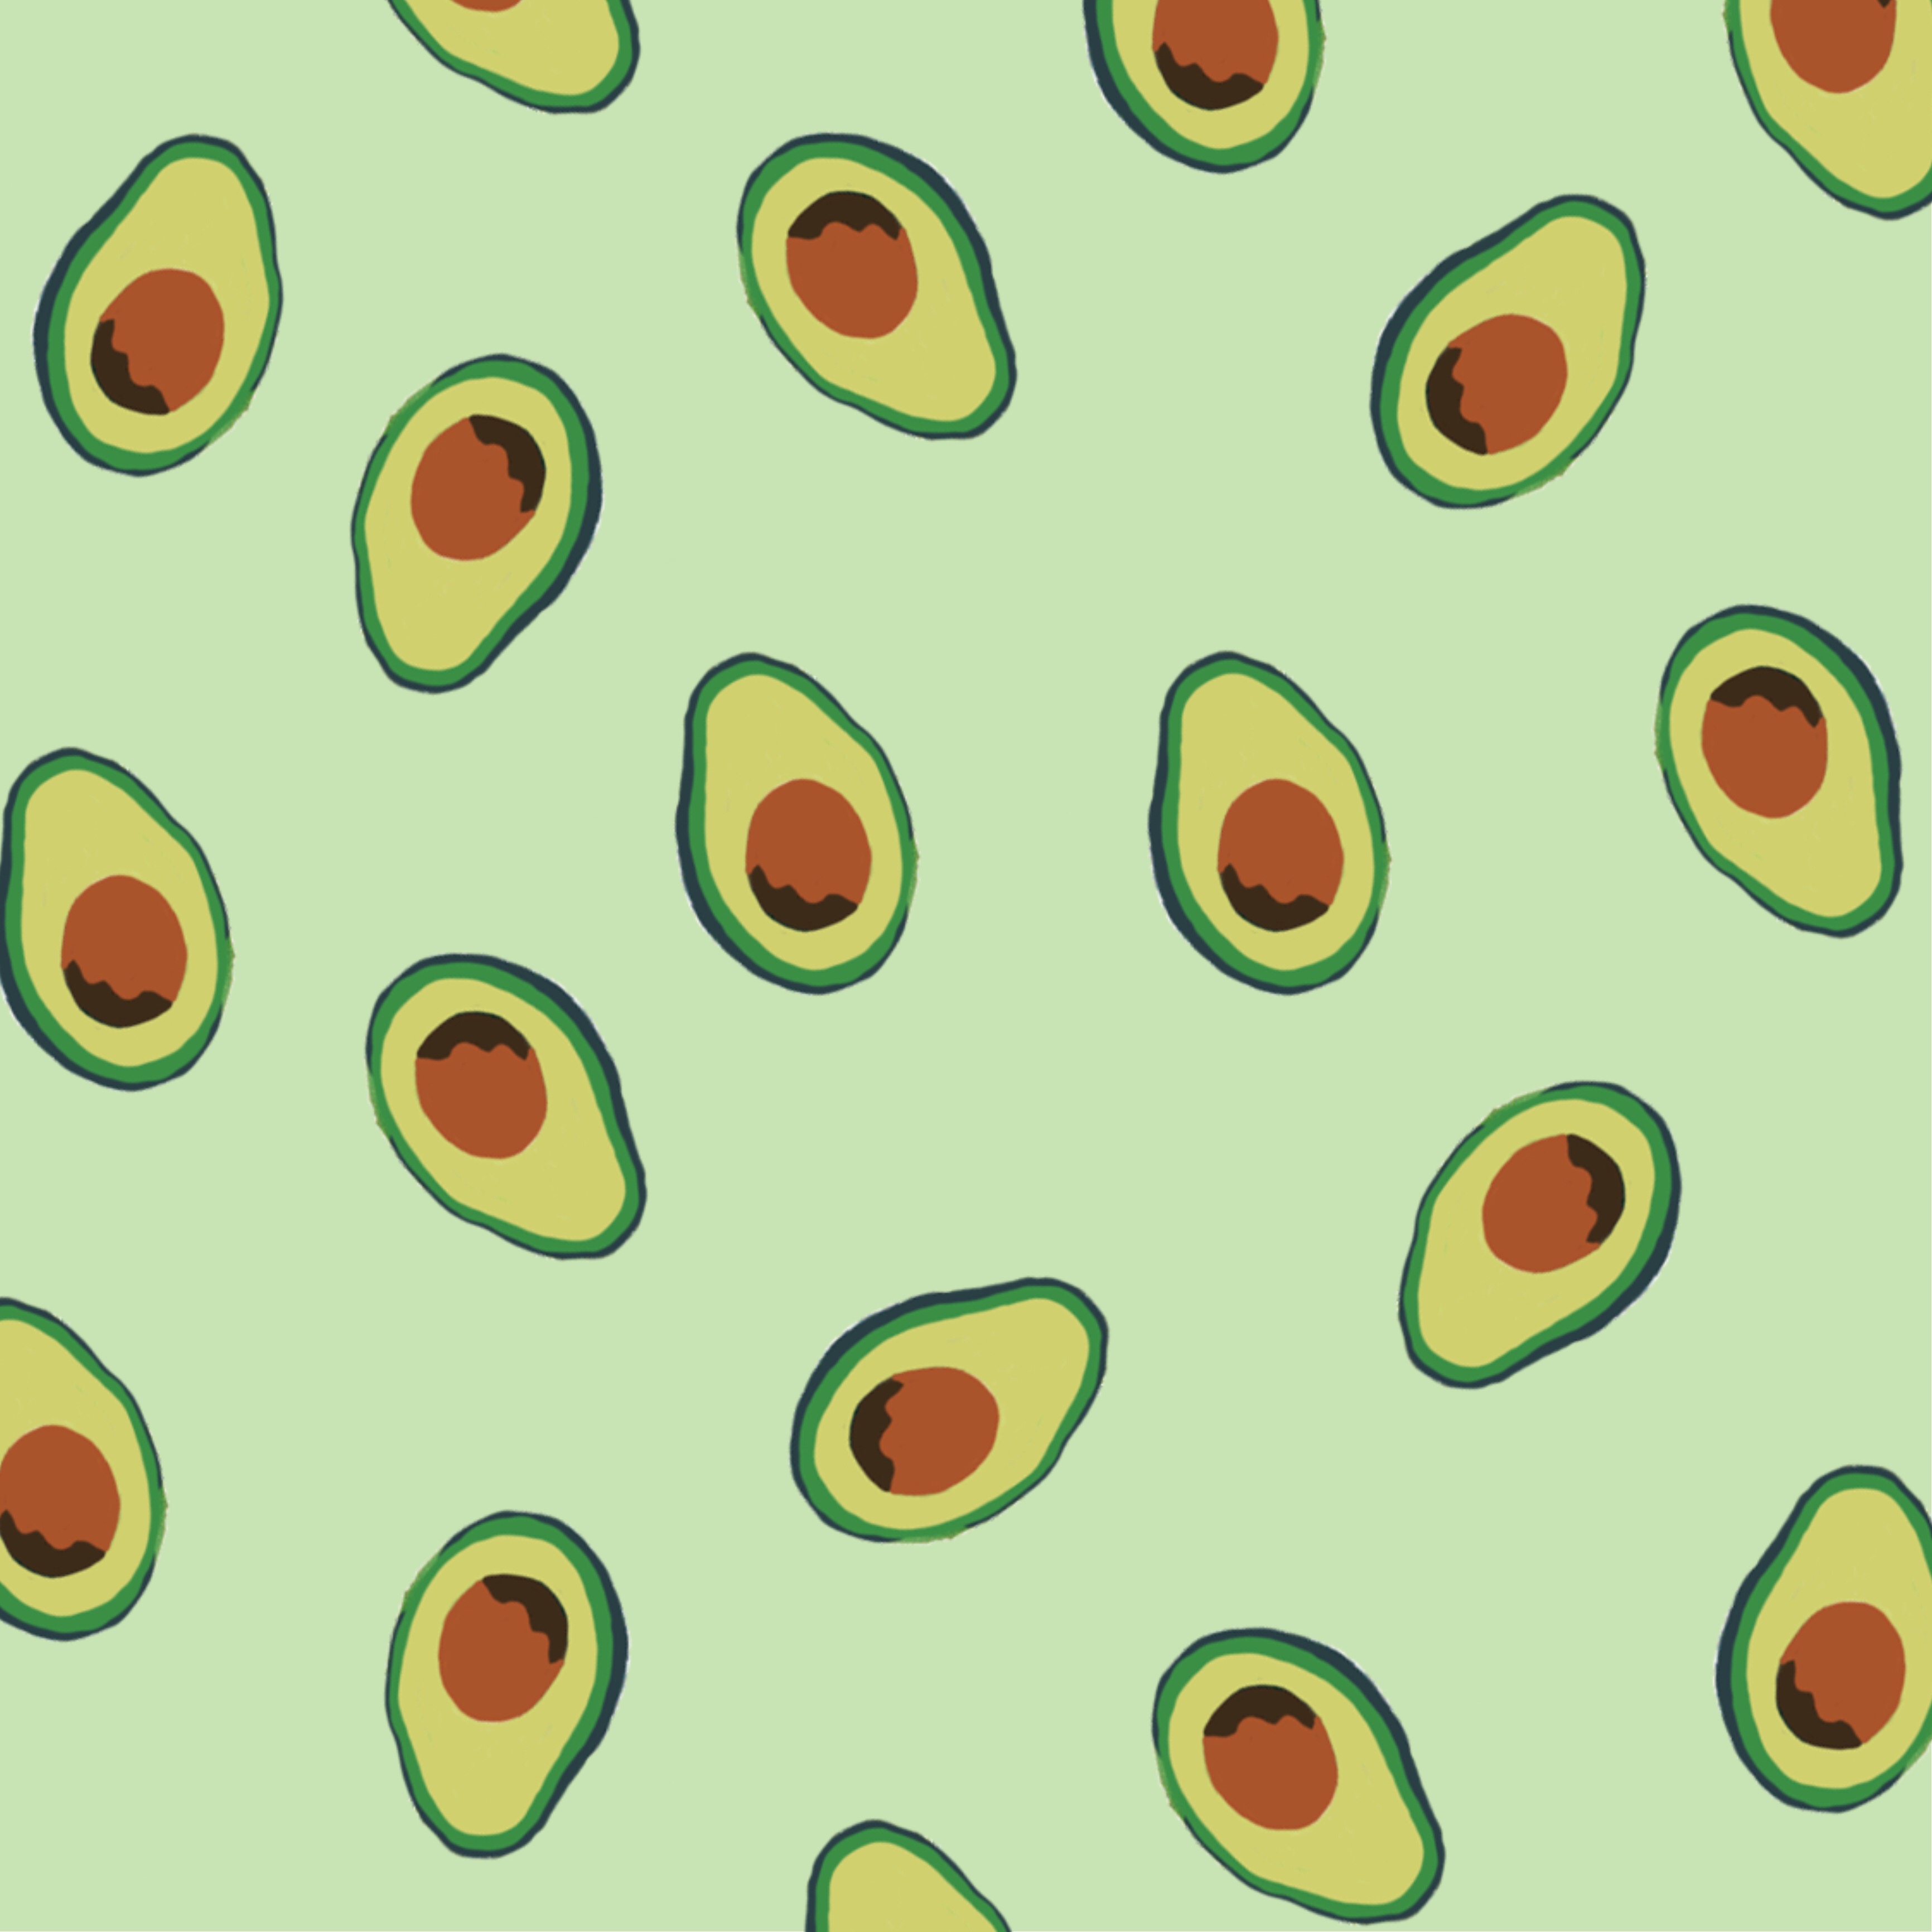 Xem ngay hơn 74+ hình nền avocado hay nhất - Trung tâm Feretco